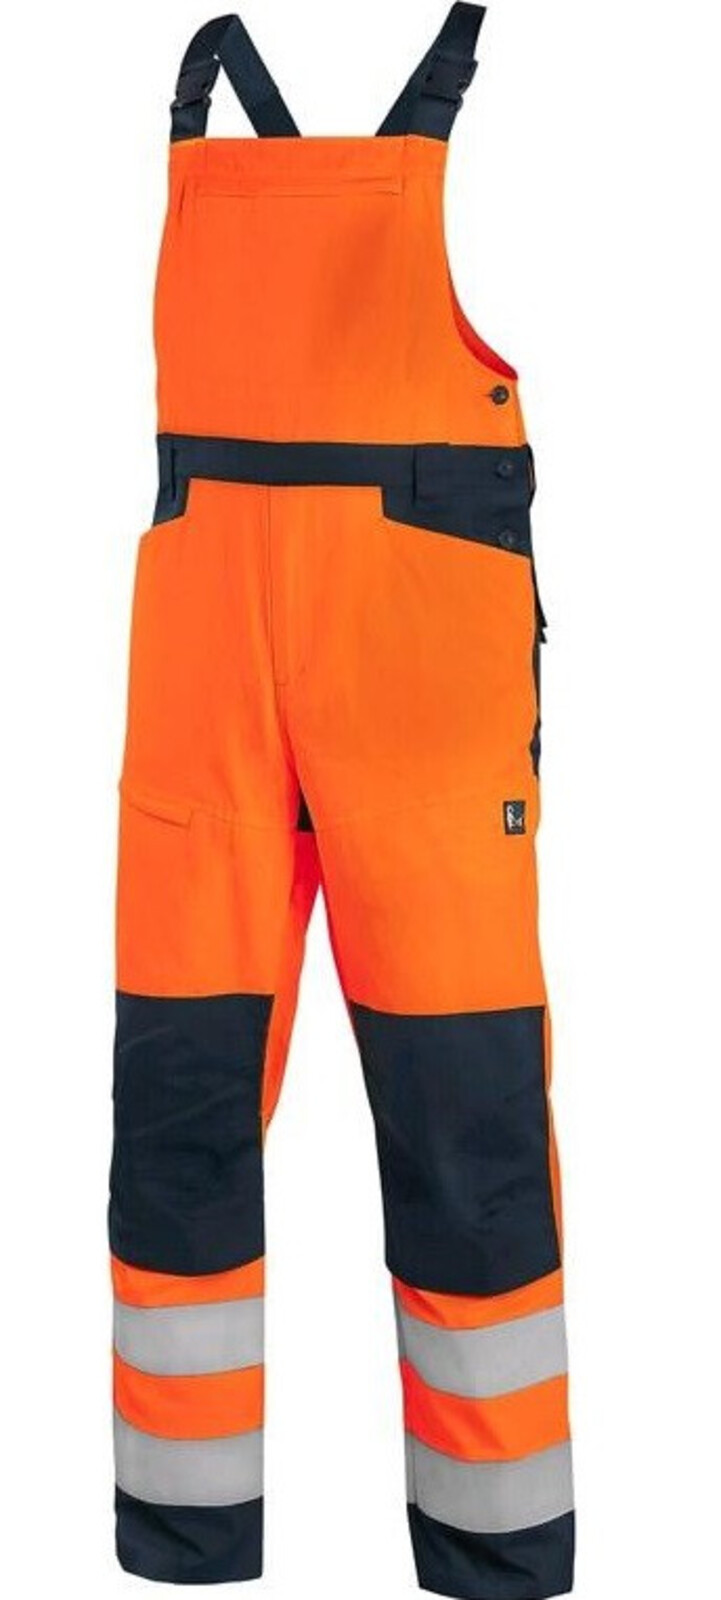 Pánske letné reflexné nohavice na traky CXS Halifax - veľkosť: 52, farba: oranžová/navy